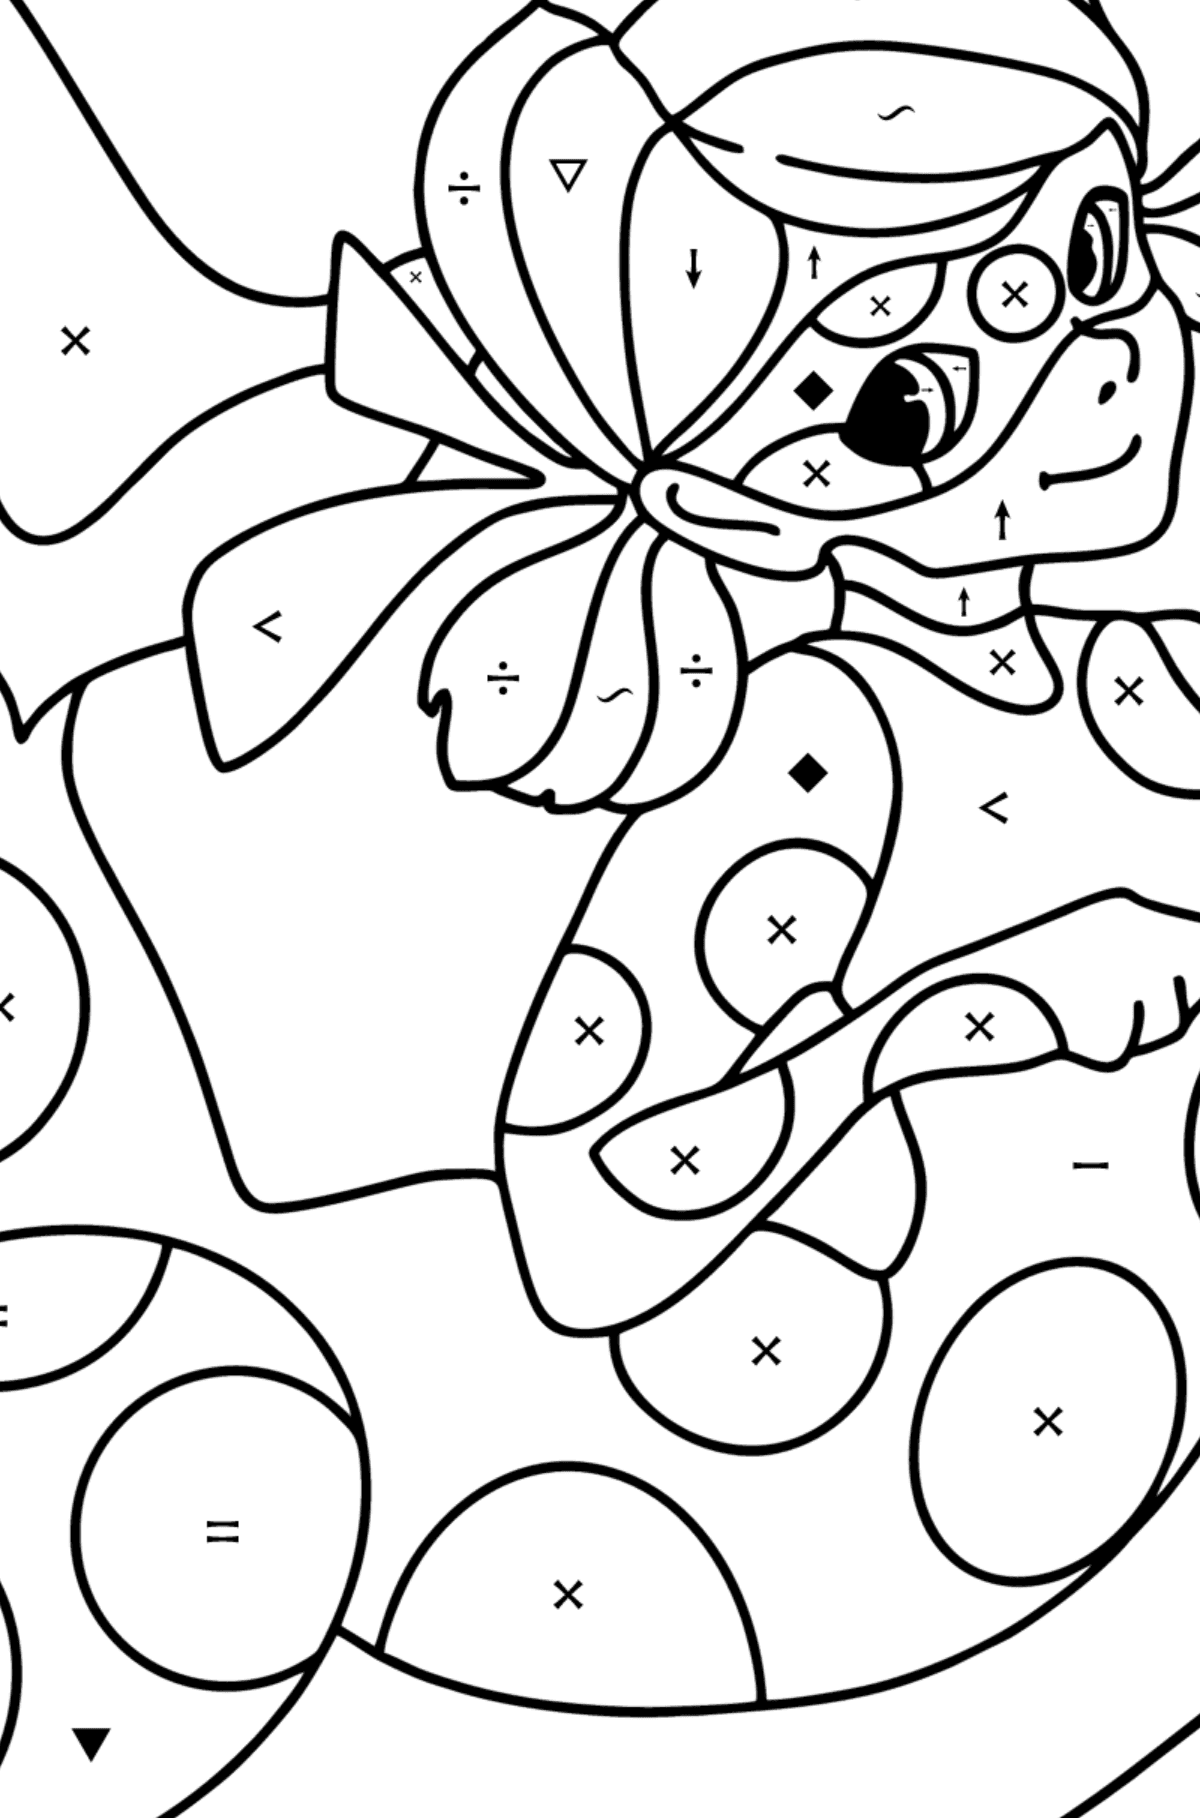 Coloriage Aqua Ladybug - Coloriage par Symboles pour les Enfants